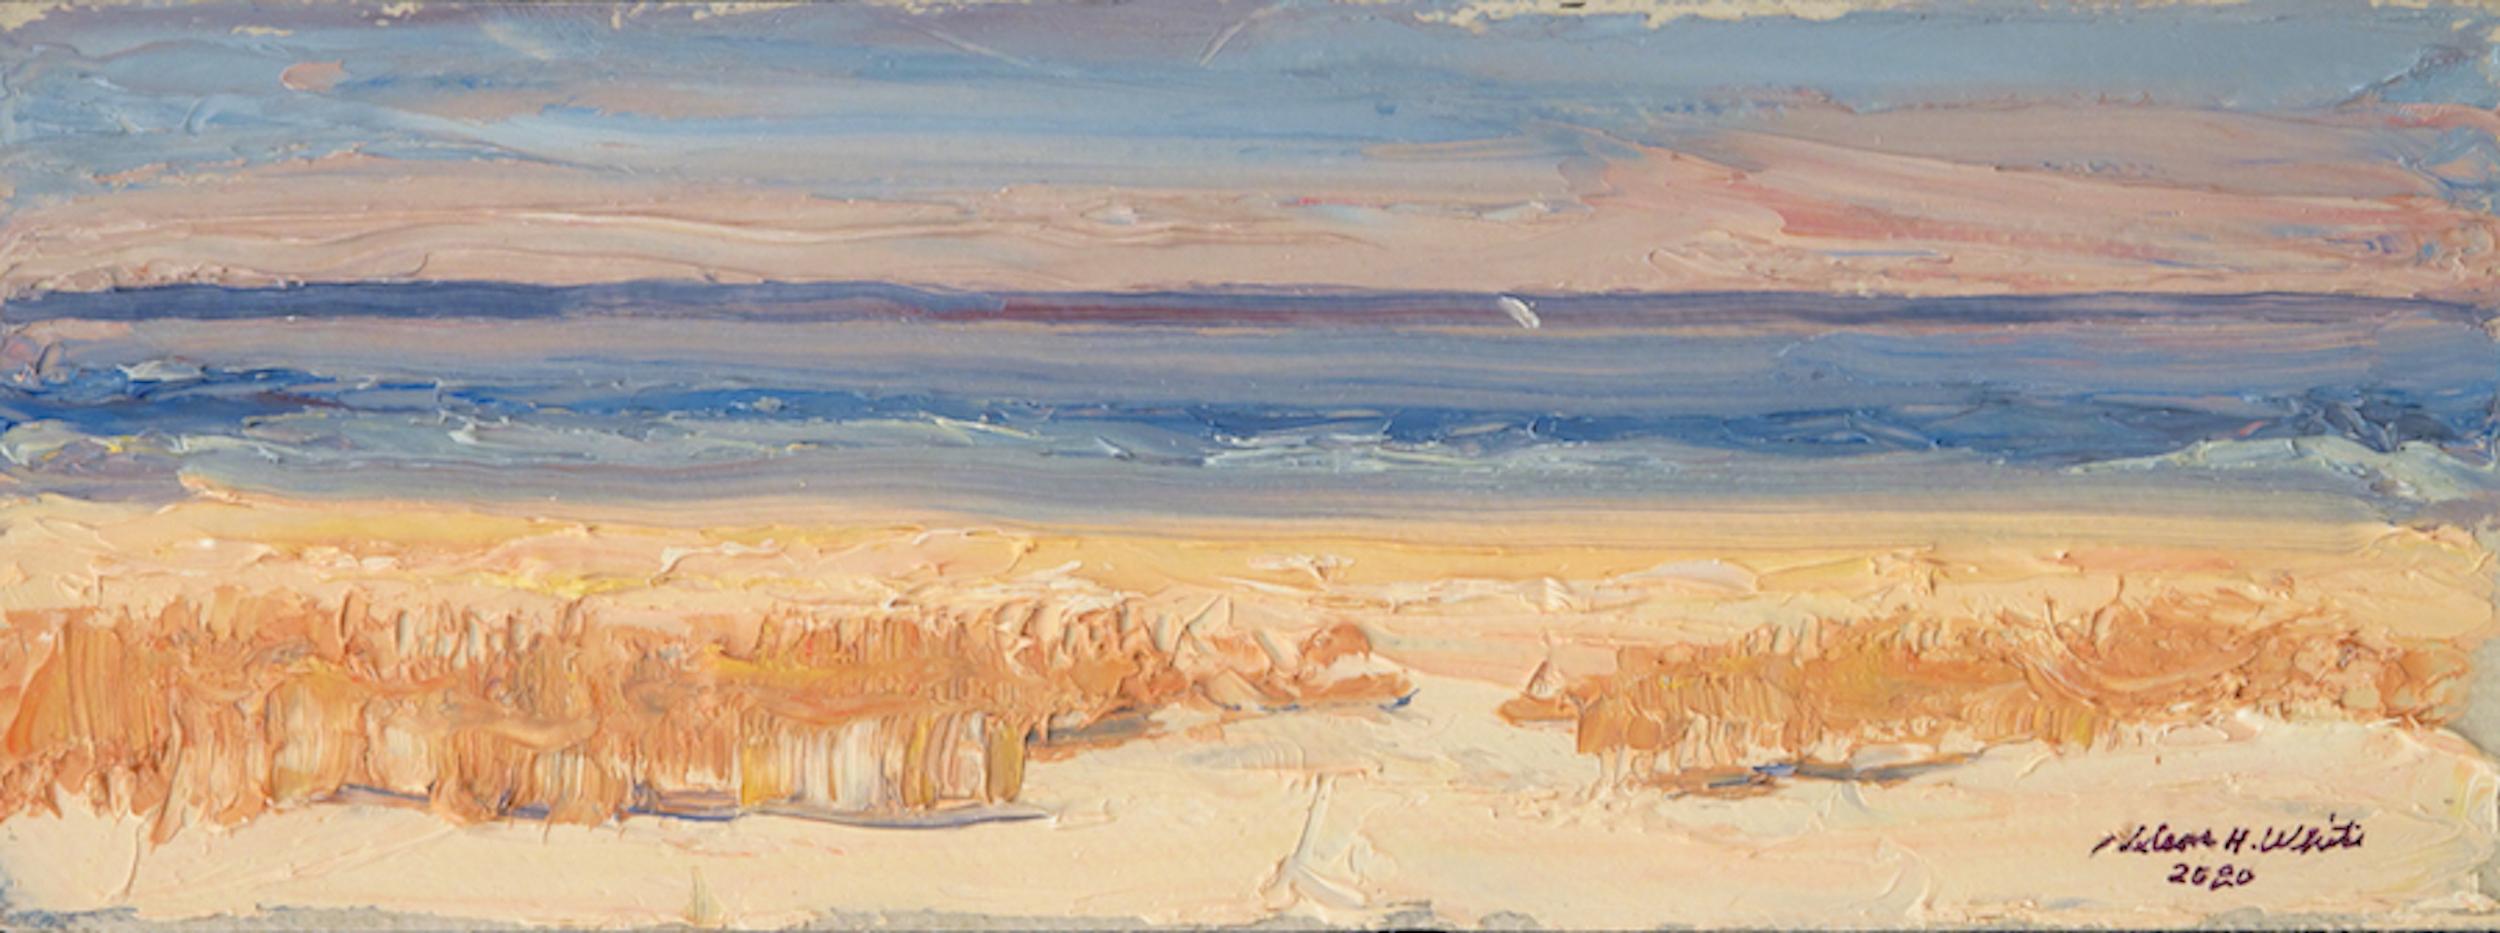 "Long Beach, Sag Harbor 11.09.2020 2020" Hamptons beach seascape peinture à l'huile - Art de Nelson White